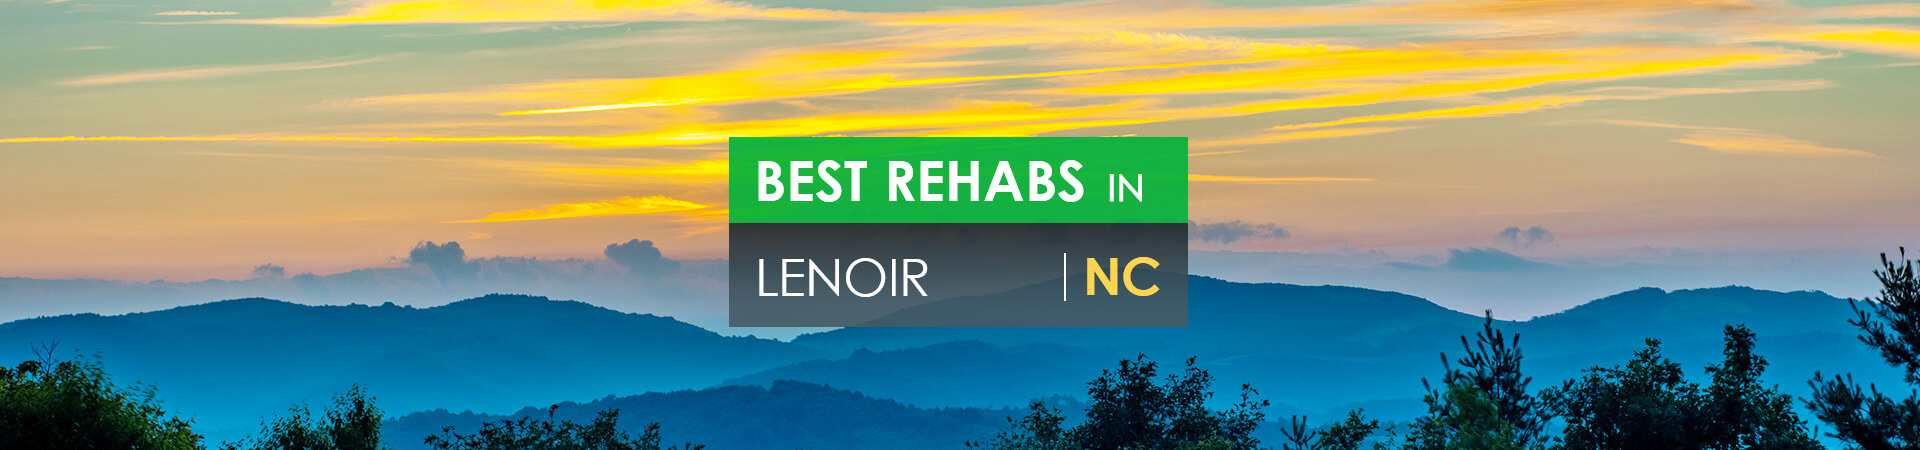 Best rehabs in Lenoir, NC